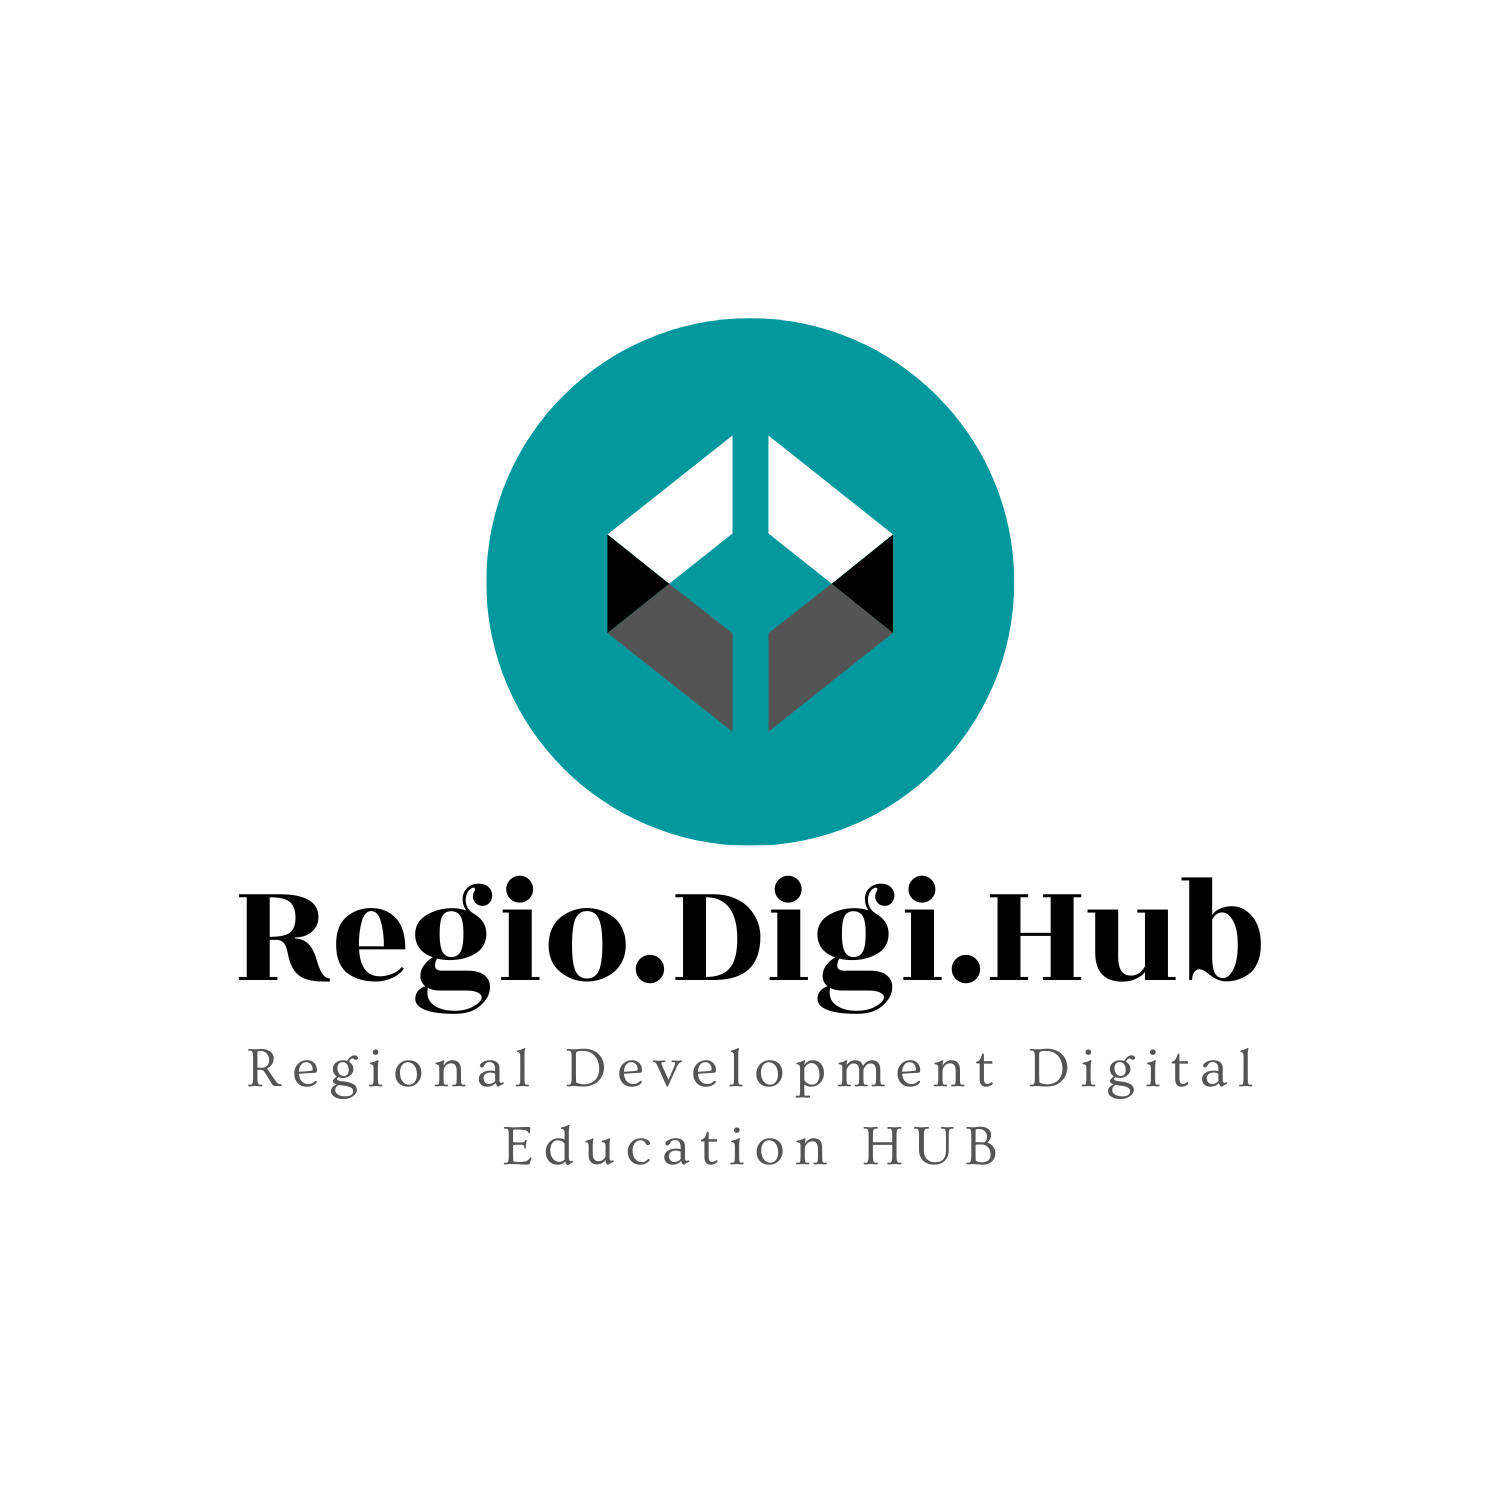 Regio.Digi.Hub Logo #1